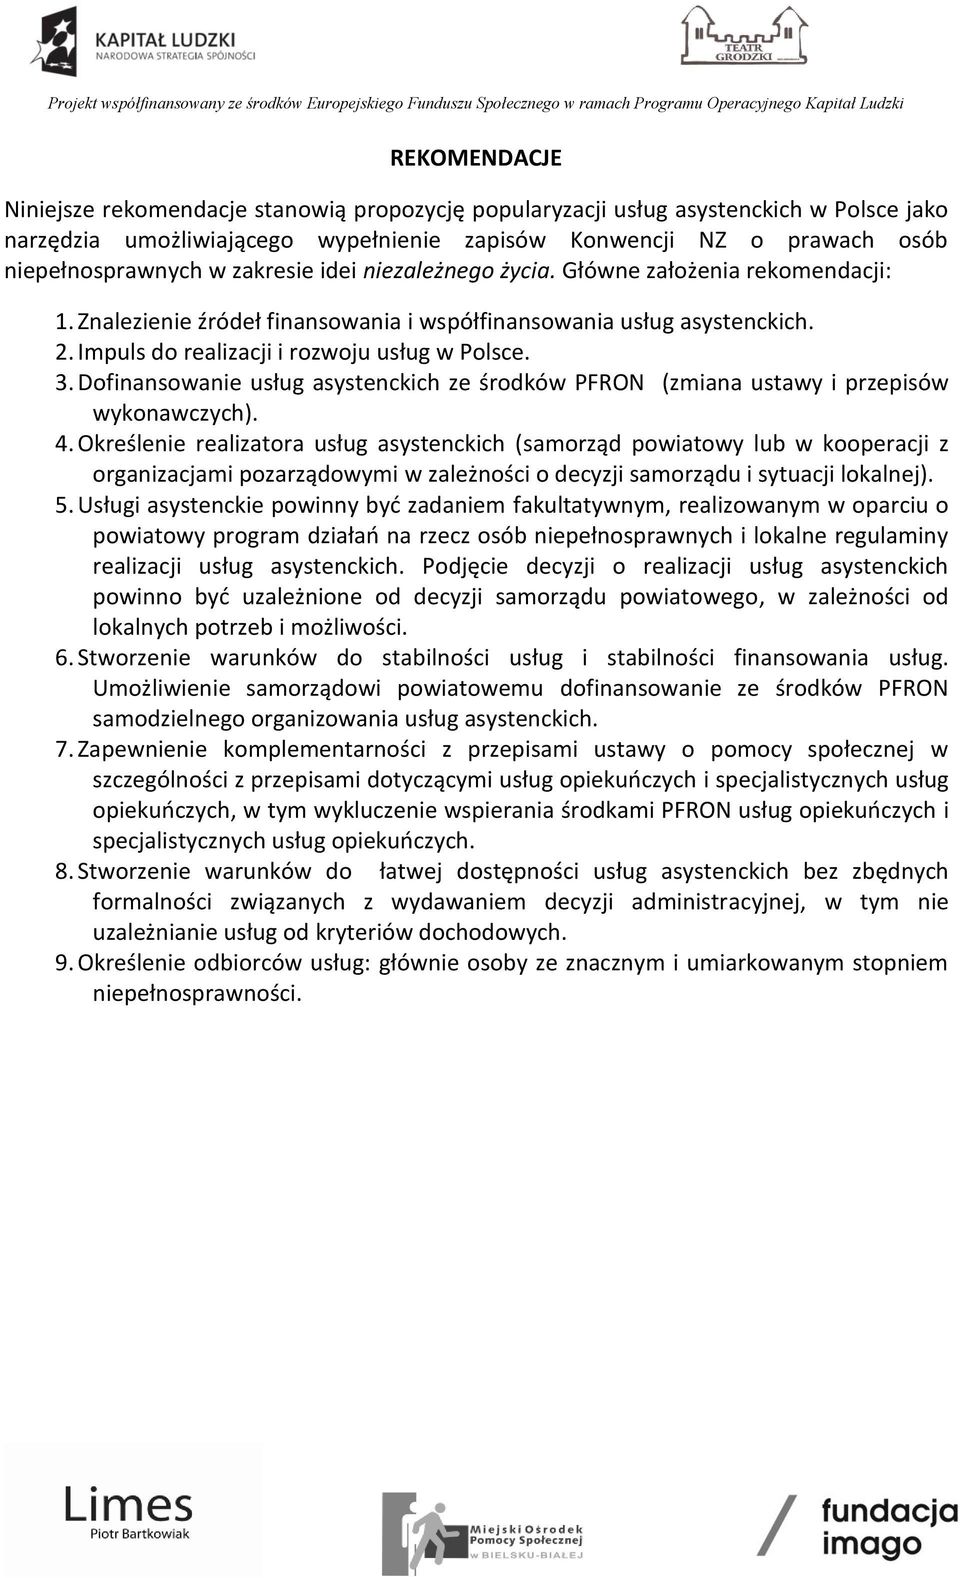 Dofinansowanie usług asystenckich ze środków PFRON (zmiana ustawy i przepisów wykonawczych). 4.